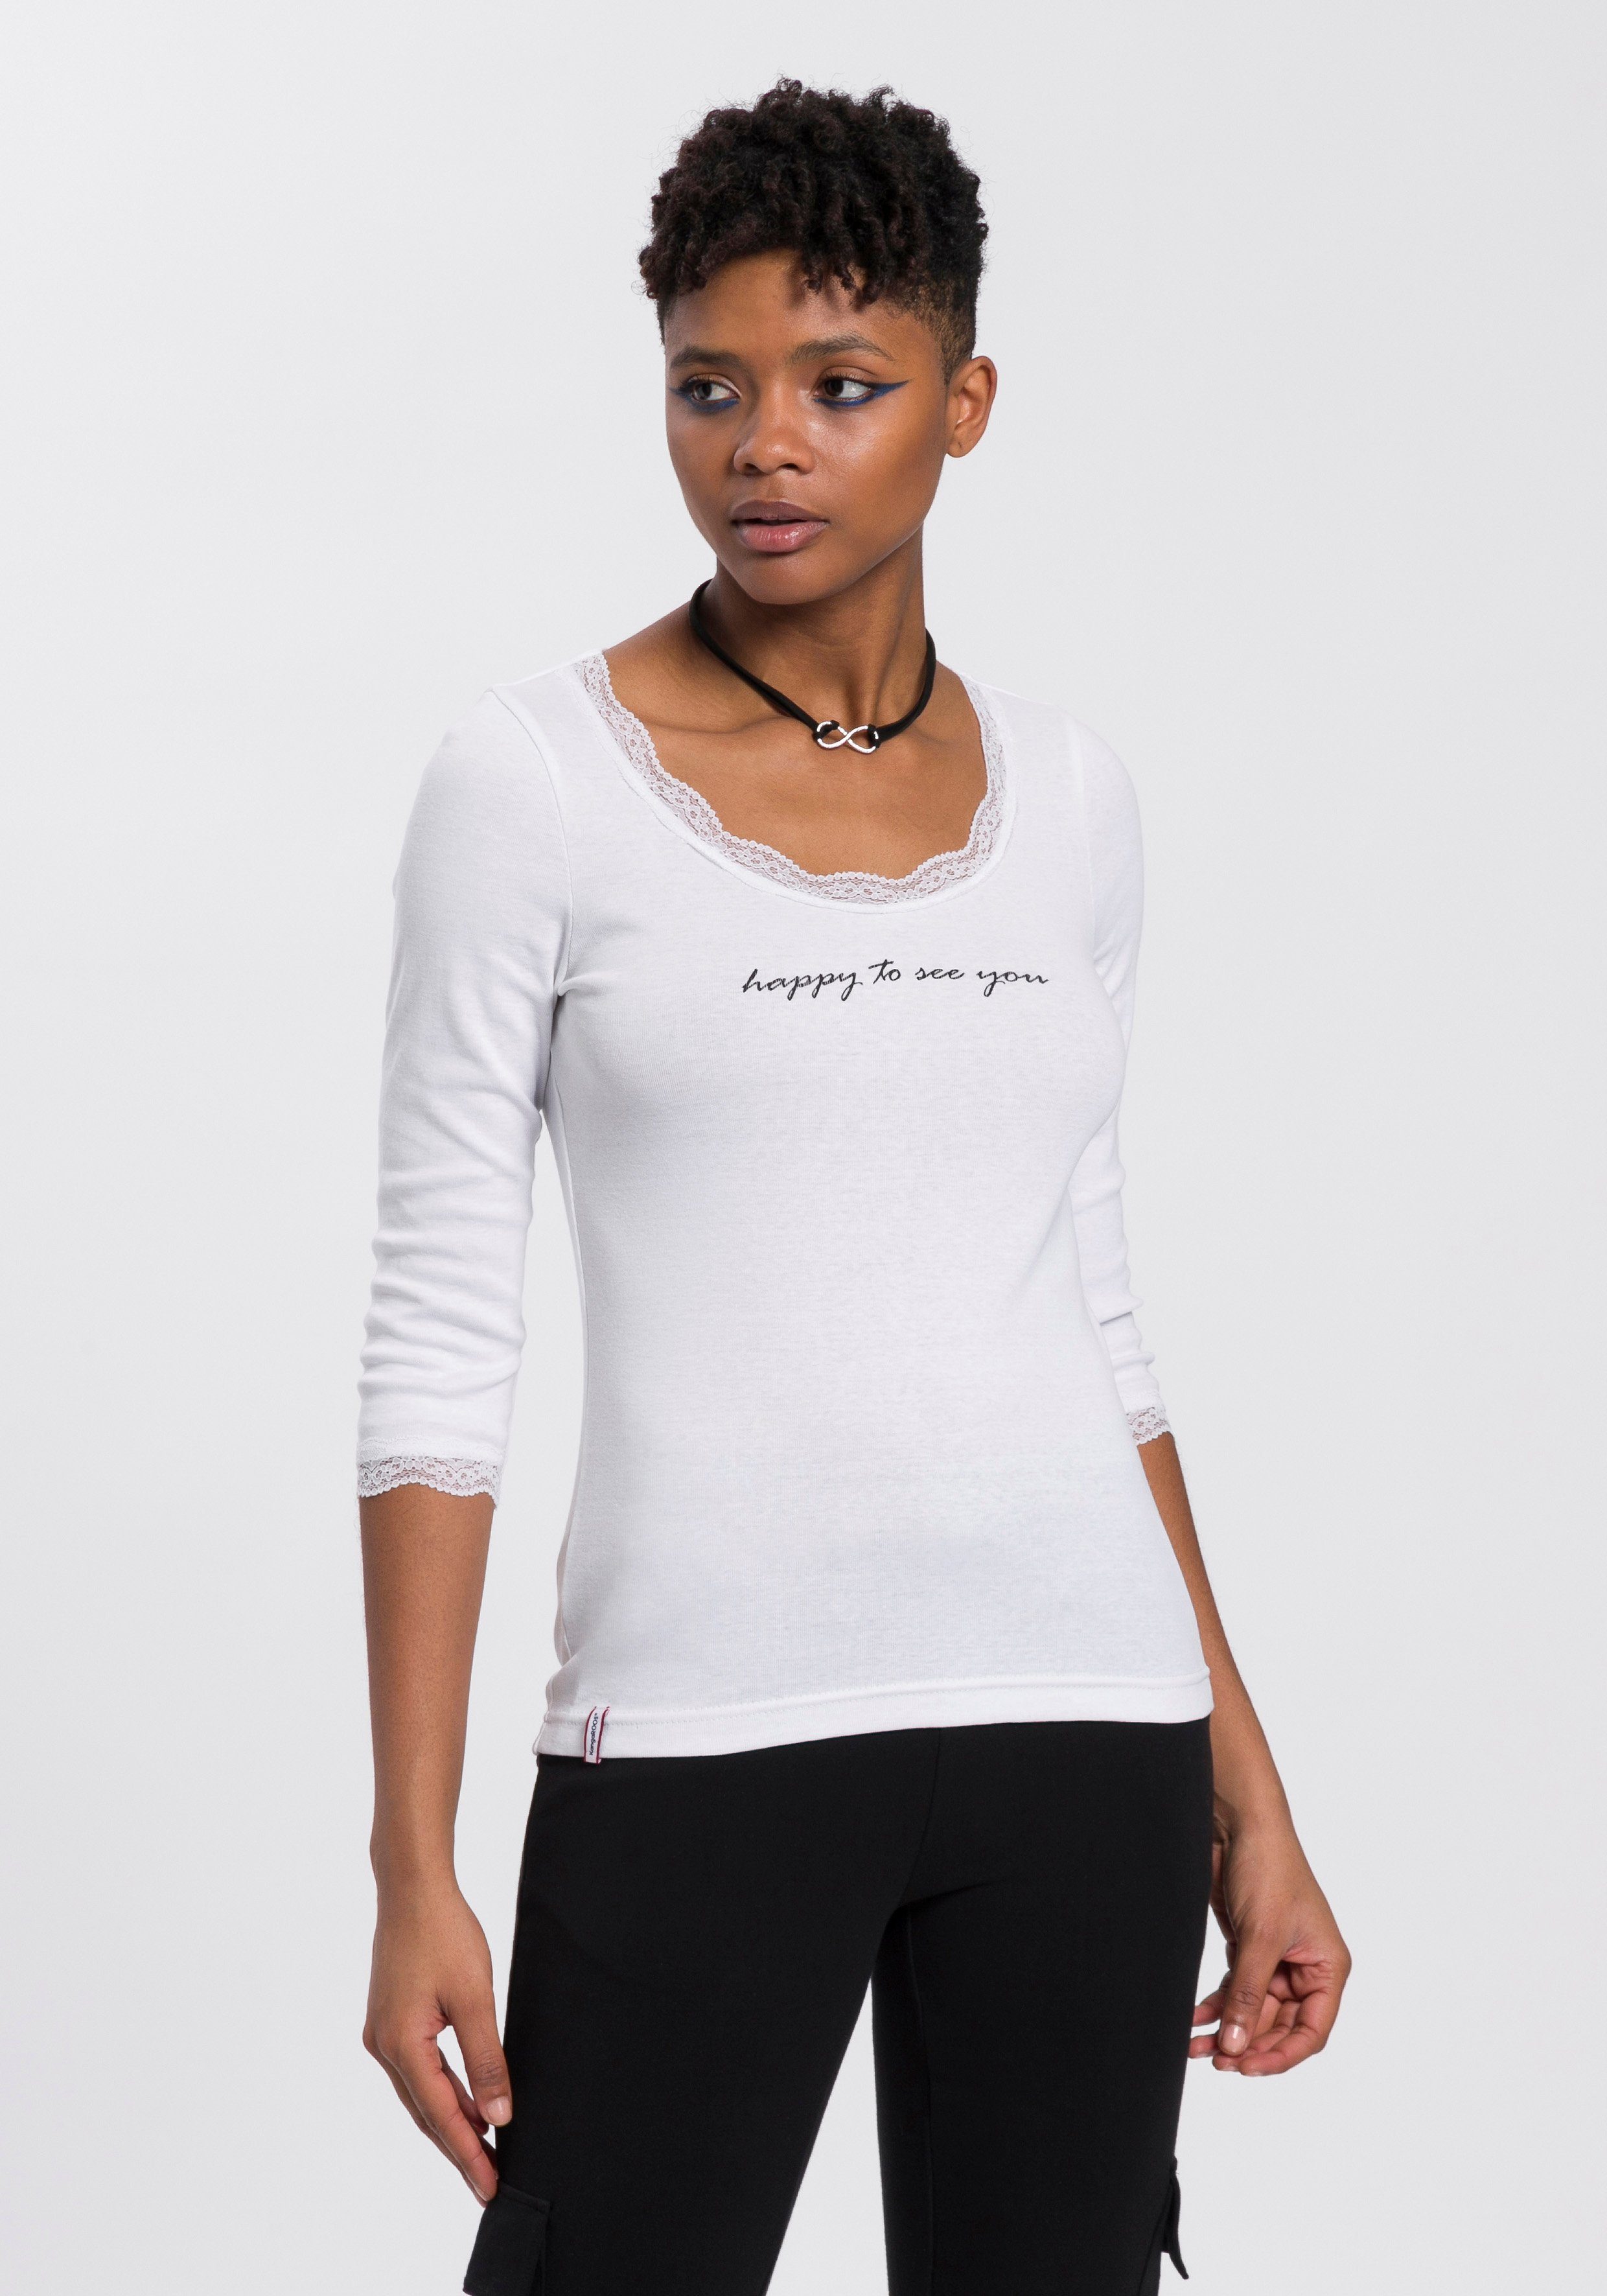 KangaROOS T-Shirt mit Spitzenband am V-Ausschnitt & 3/4-Arm - NEUE  KOLLEKTION online kaufen | OTTO